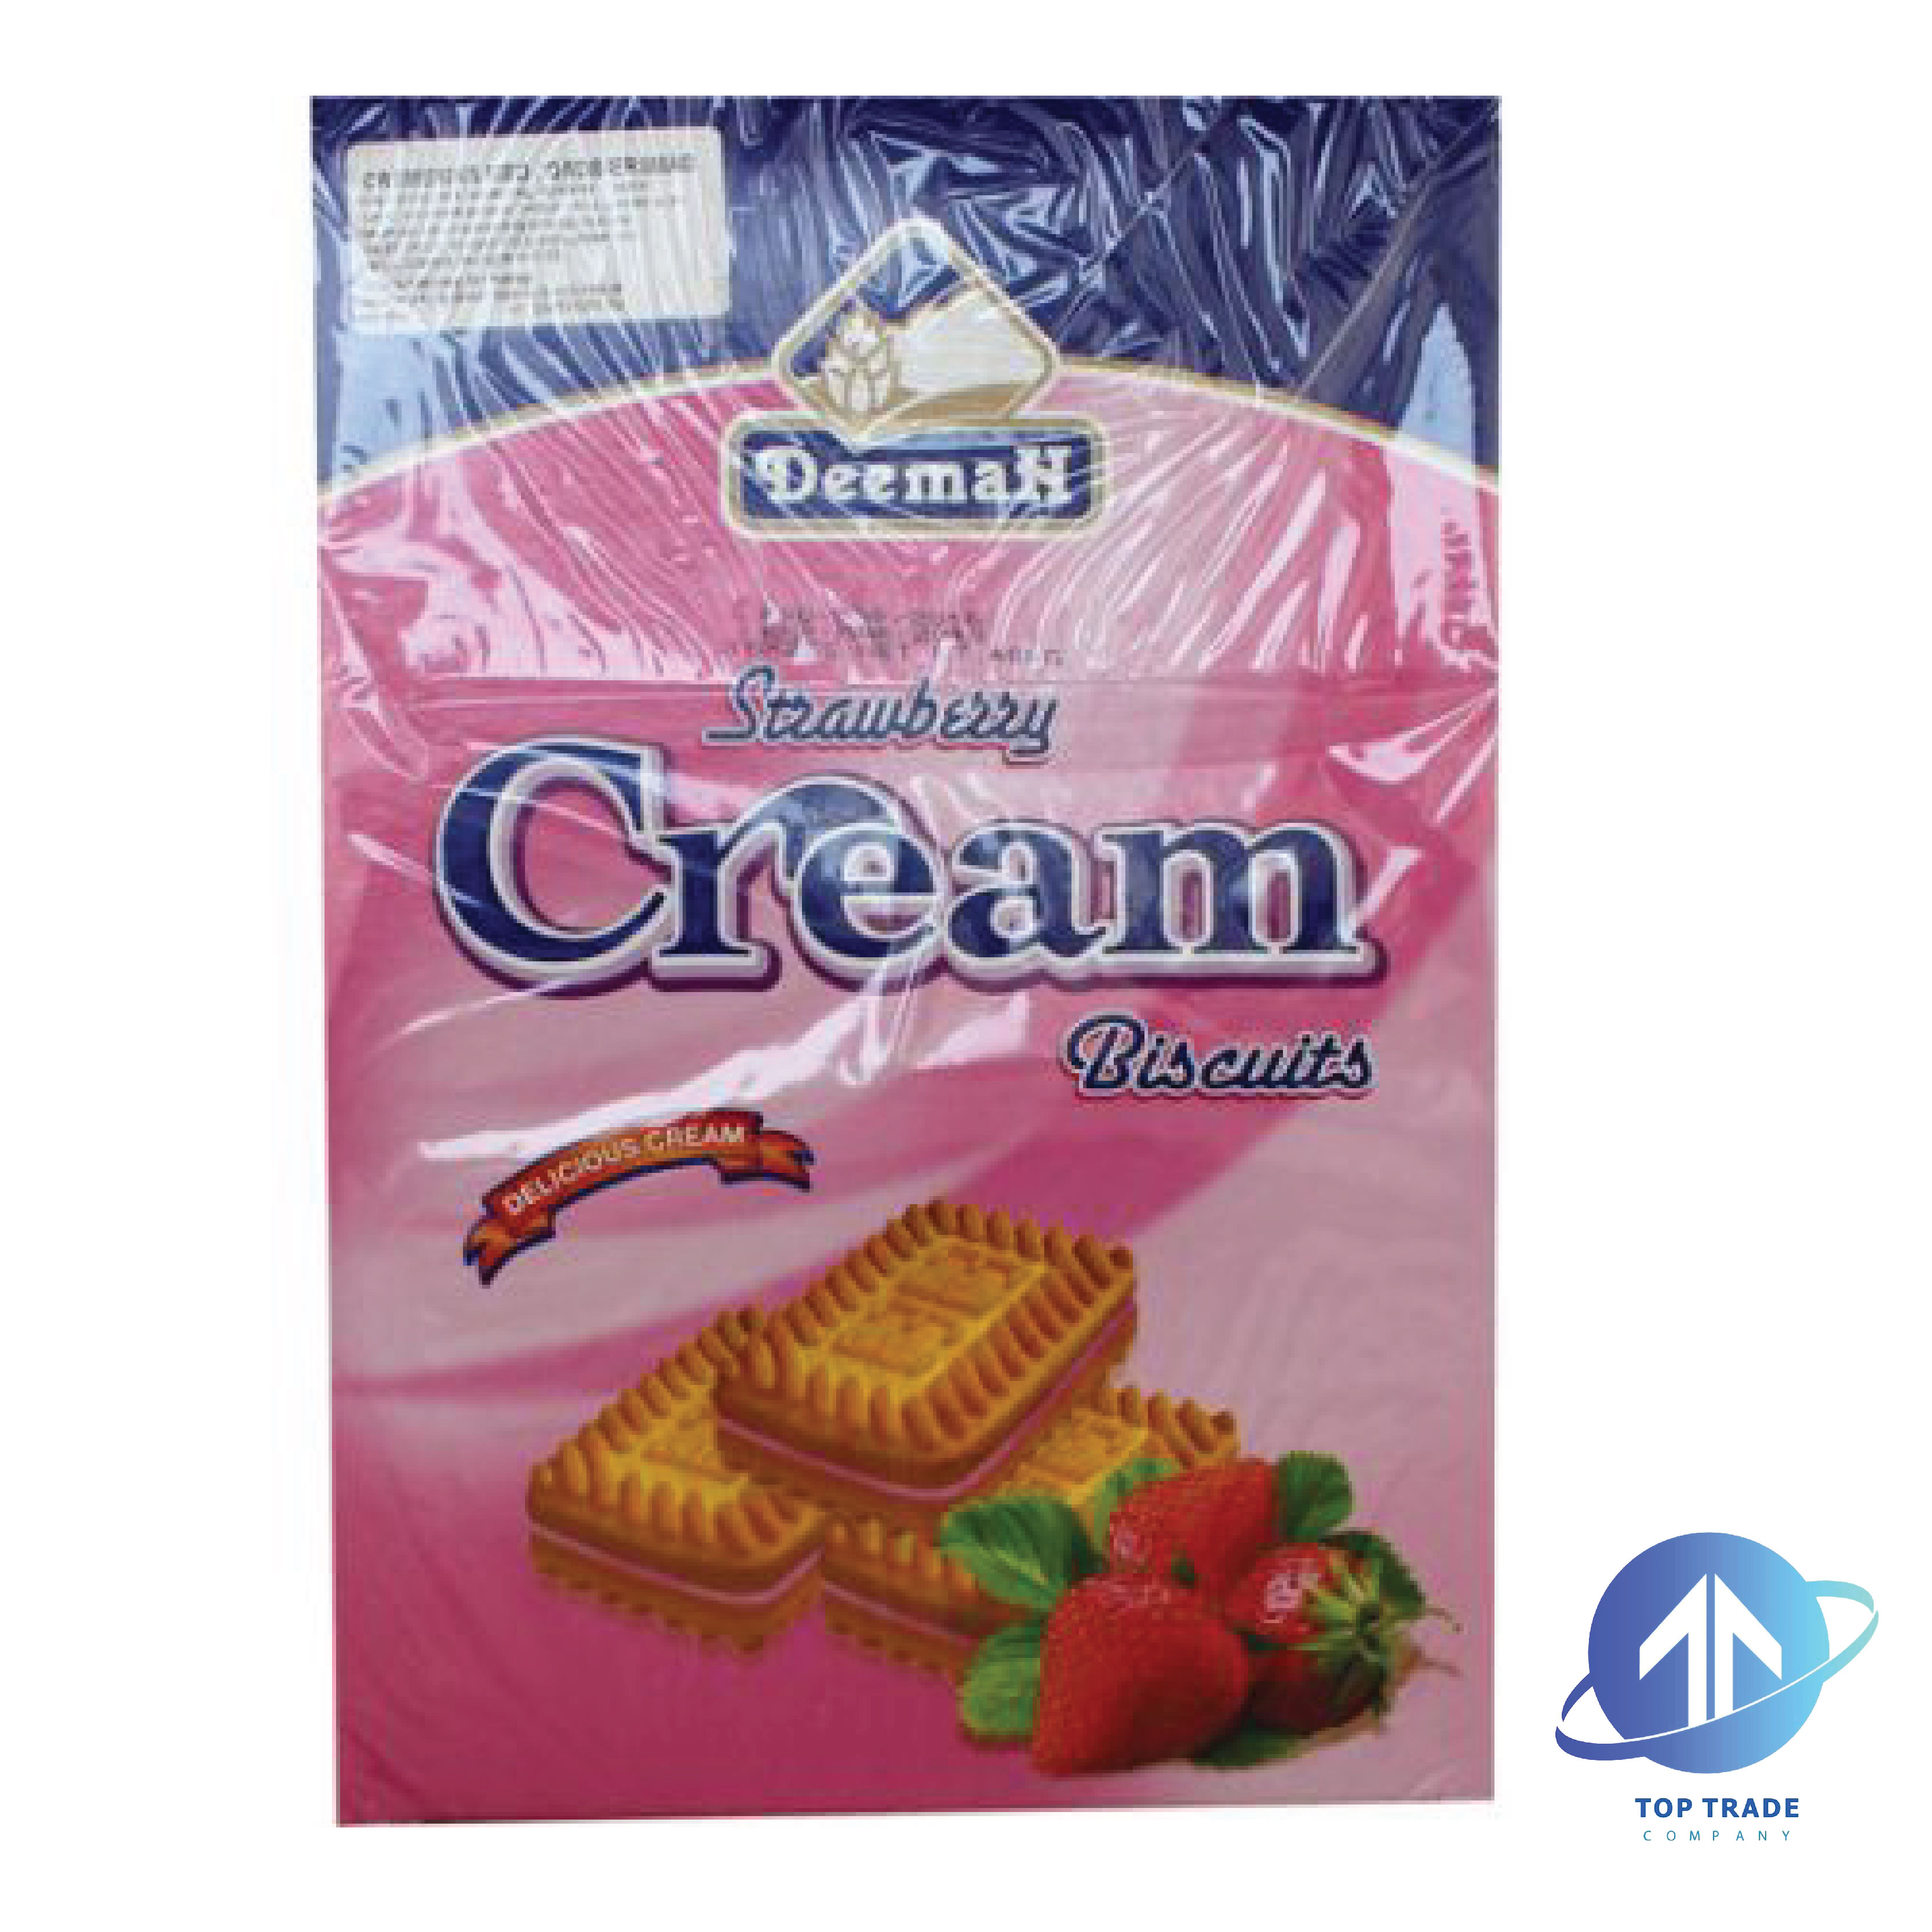 Deemah Strawberry Cream Biscuits 460gr